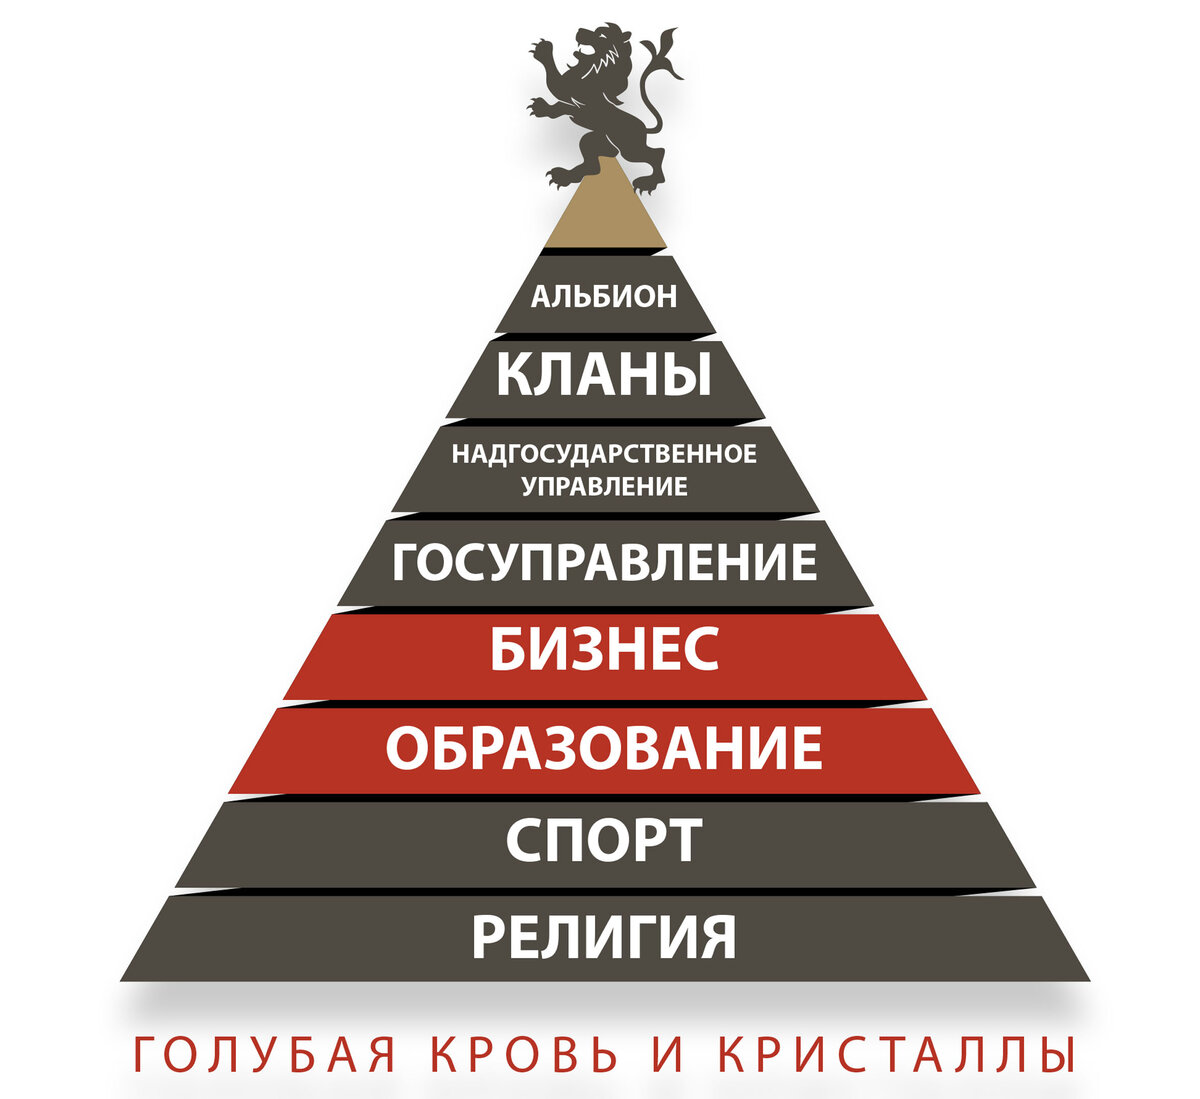 Будем миром управлять. Пирамида управления миром. Пирамида управления в менеджменте. Пирамида управления миром такси. 4 Знака зодиака пирамиды.